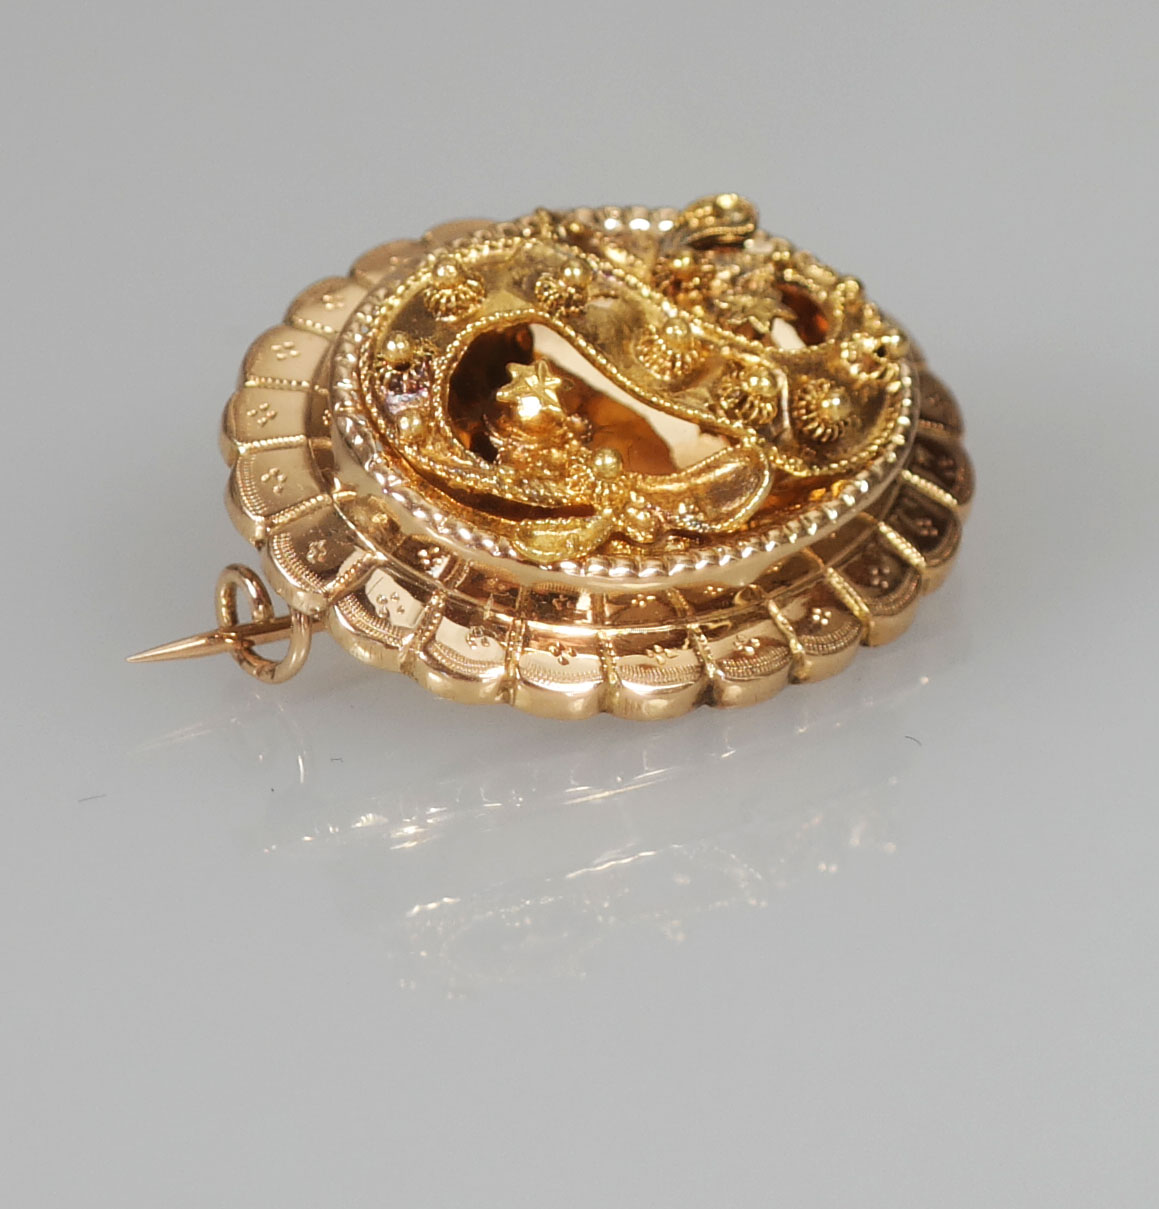 Bedenk toekomst schuifelen Antieke gouden streekdracht broche - Antieke Sieraden - Kroone & Co